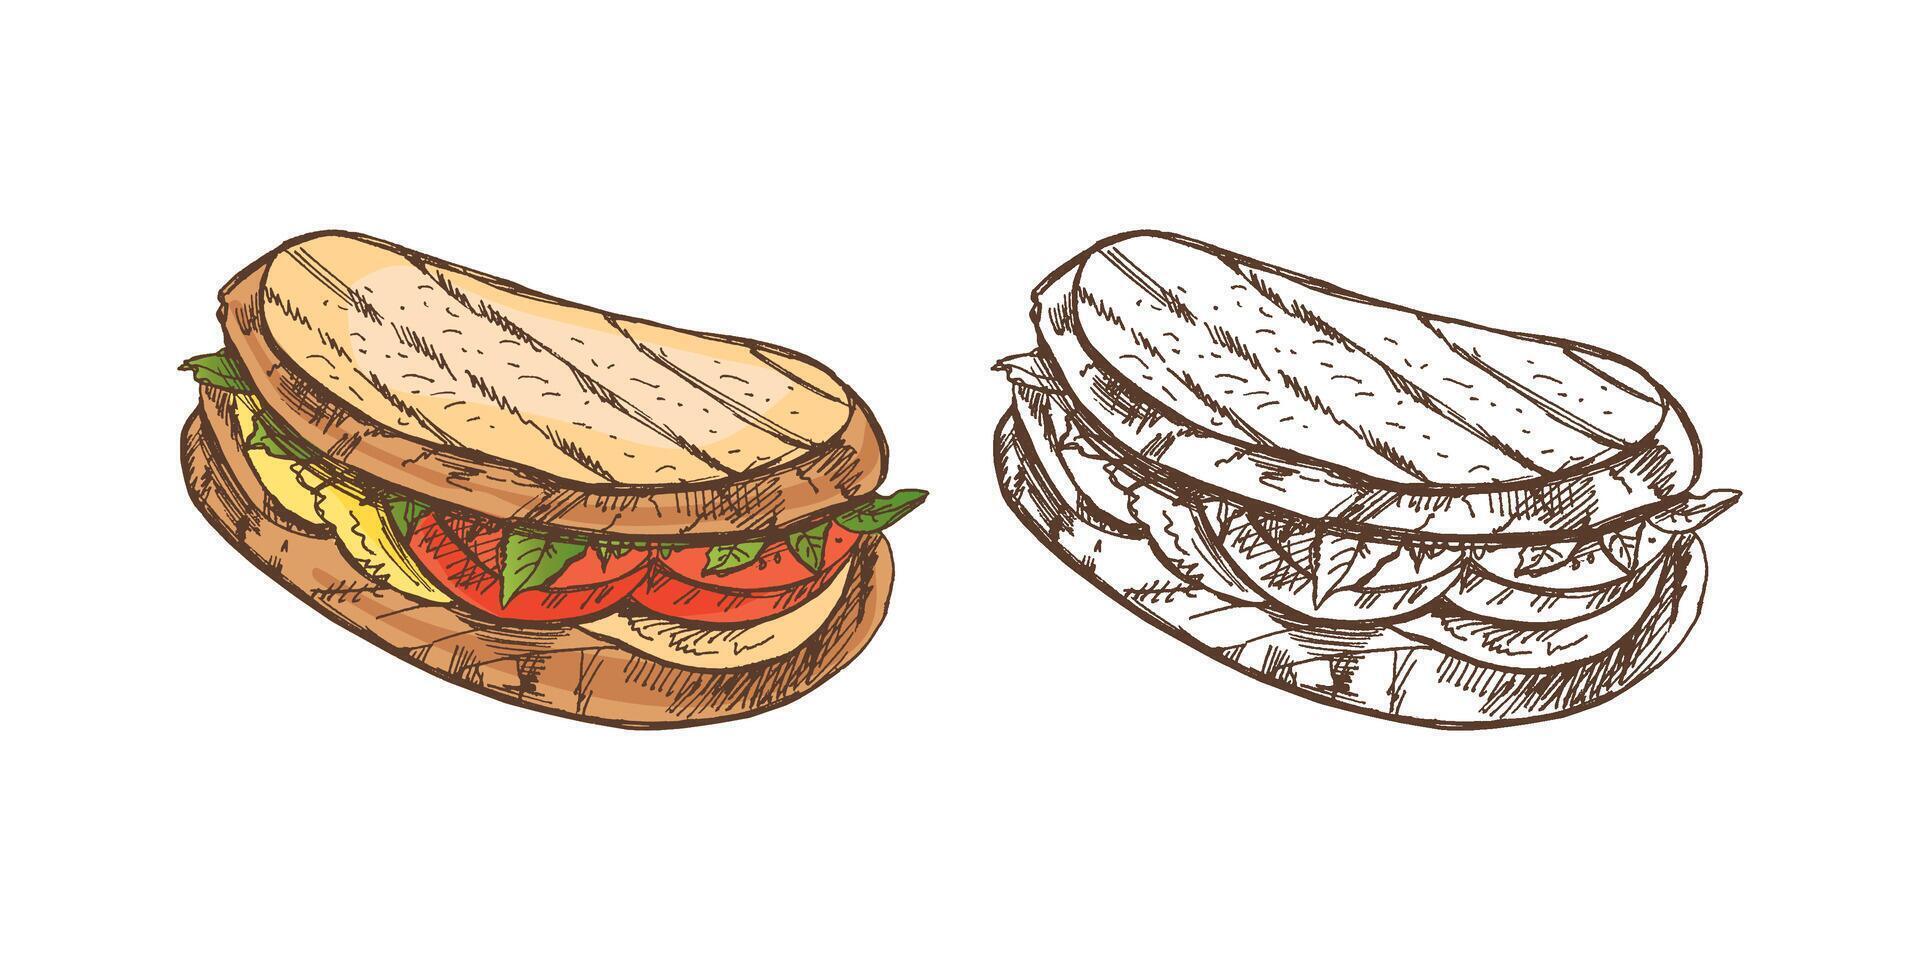 handgemalt farbig und einfarbig Vektor skizzieren von ein Stück von Sandwich mit Gemüse, Käse, Fleisch. Gekritzel Jahrgang Illustration. Dekorationen zum das Speisekarte von Cafés und Etiketten. graviert Bild.